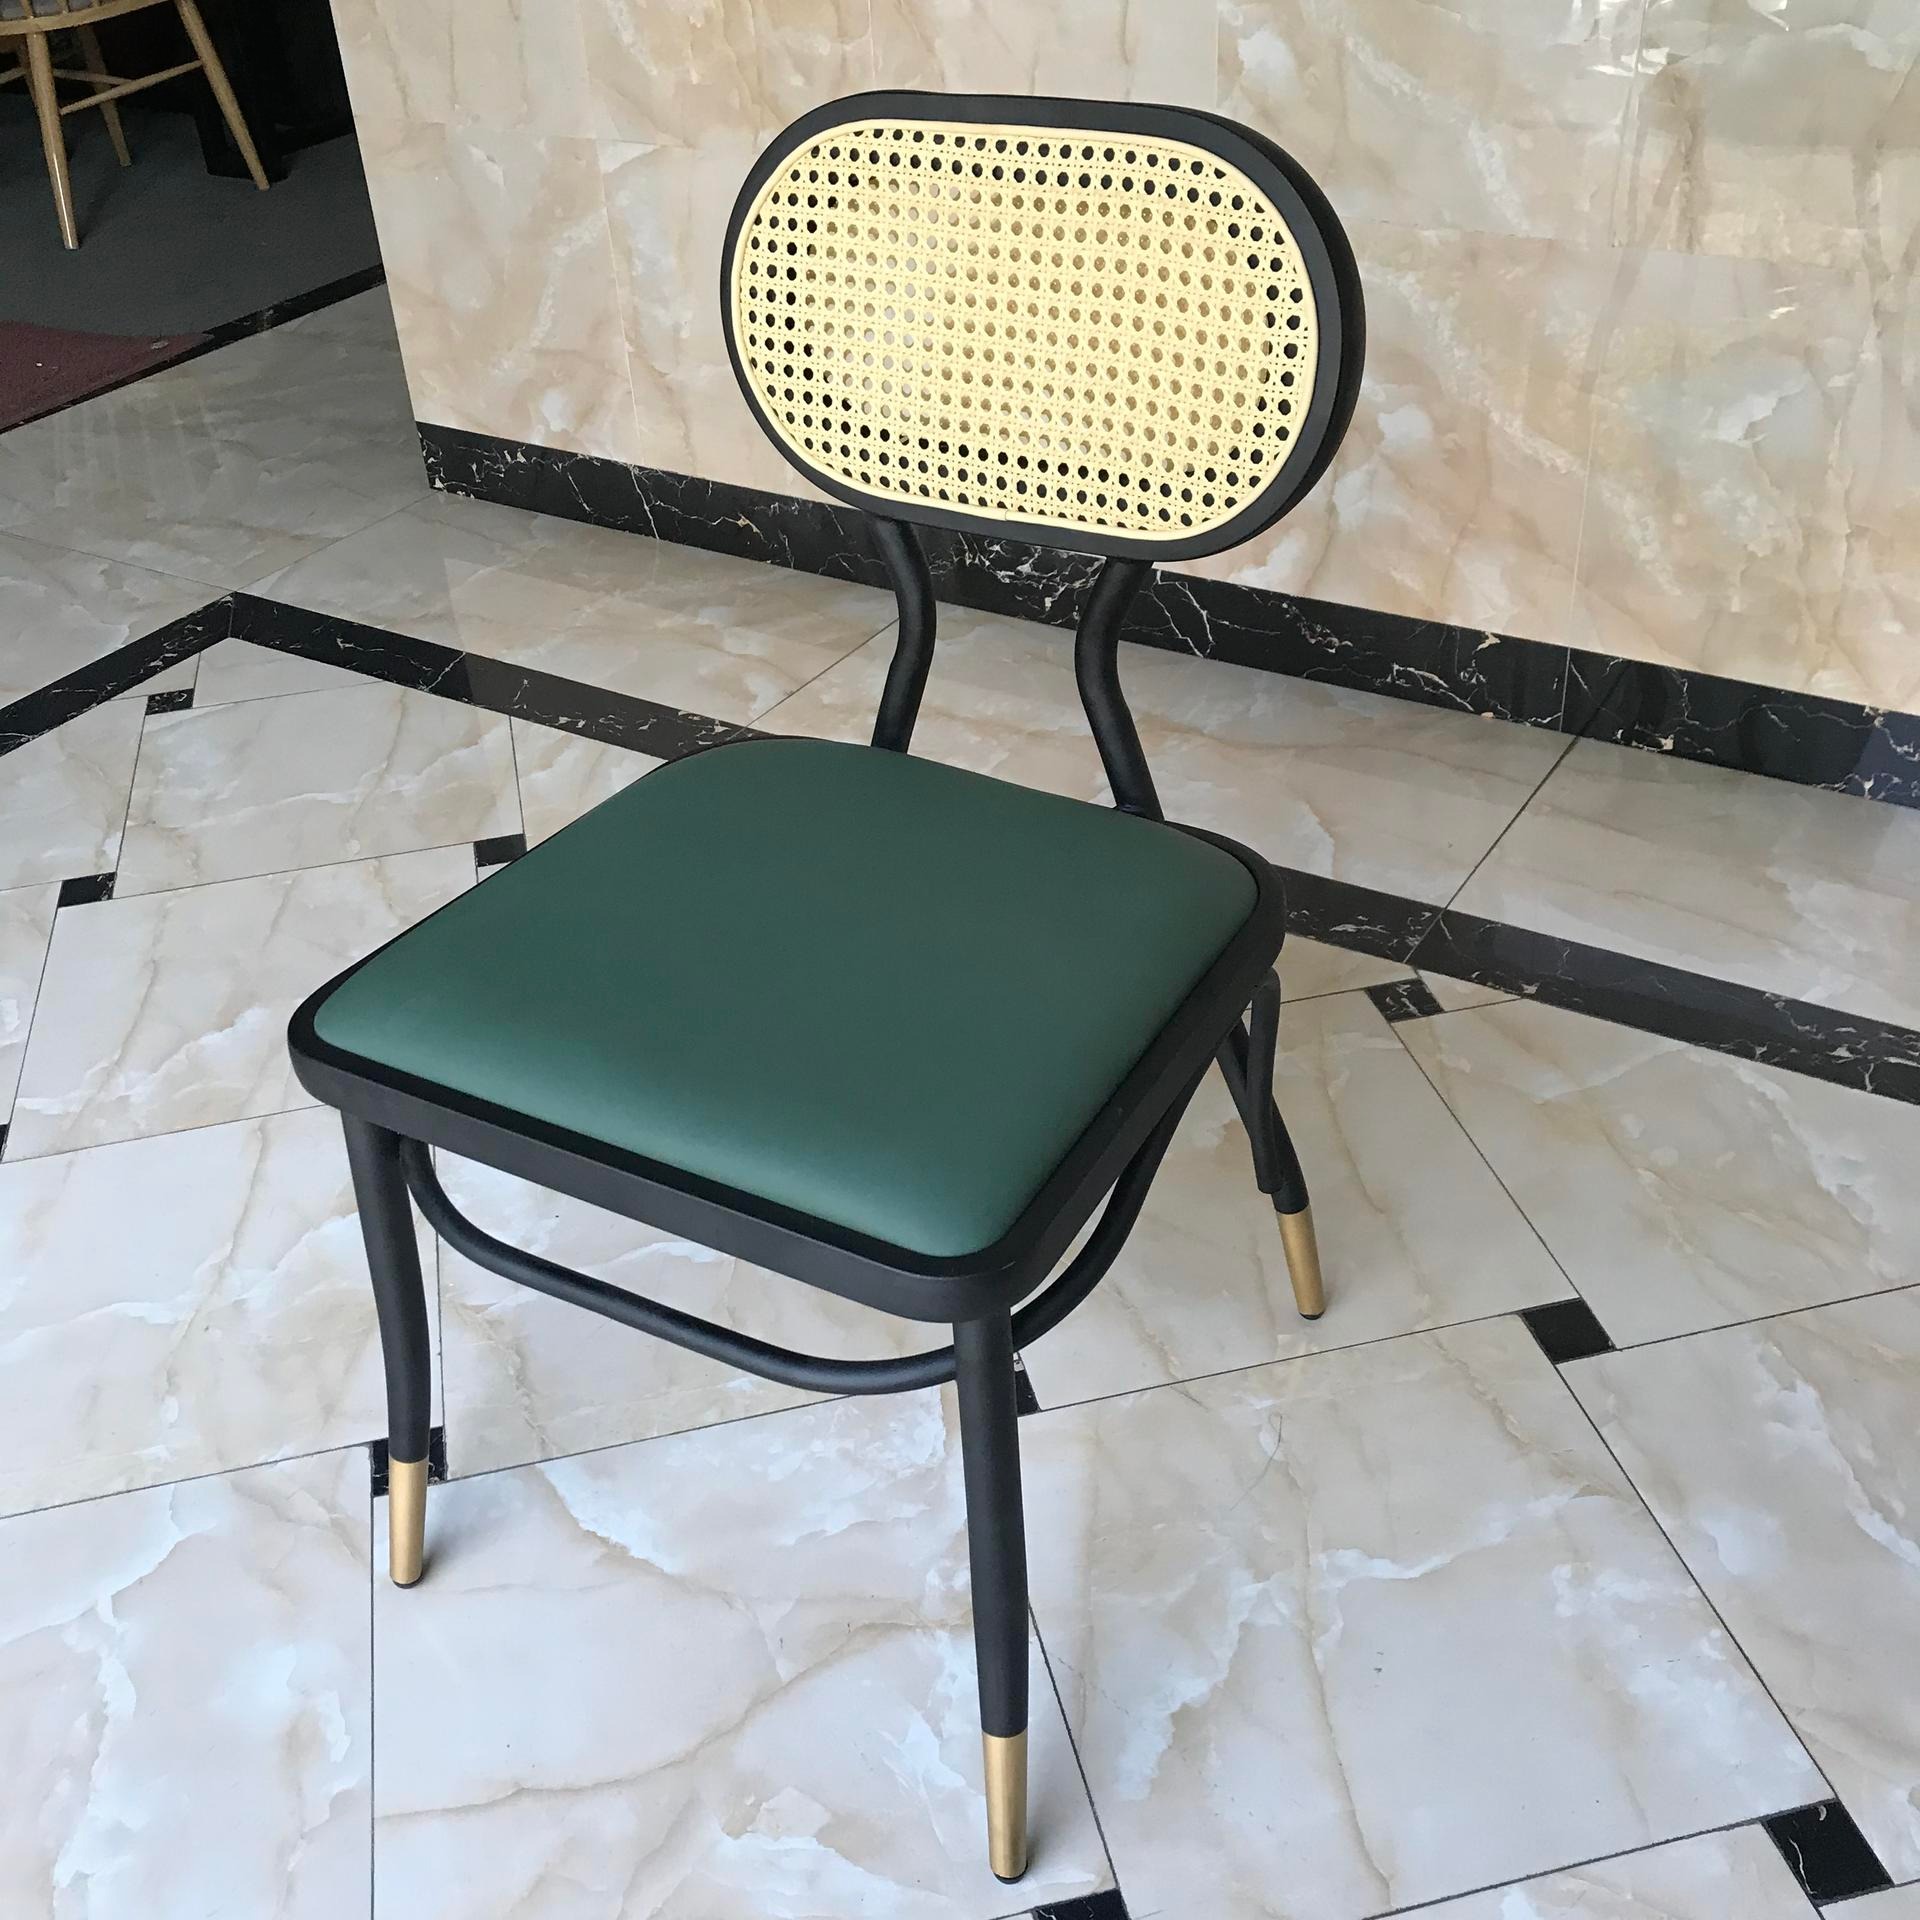 东莞迪佳2020新款编藤背椅 实木 钢架 西皮垫 家用椅子 塑料靠背椅 北欧塑料椅 公共餐椅 PP塑胶餐椅 快餐桌塑料椅图片